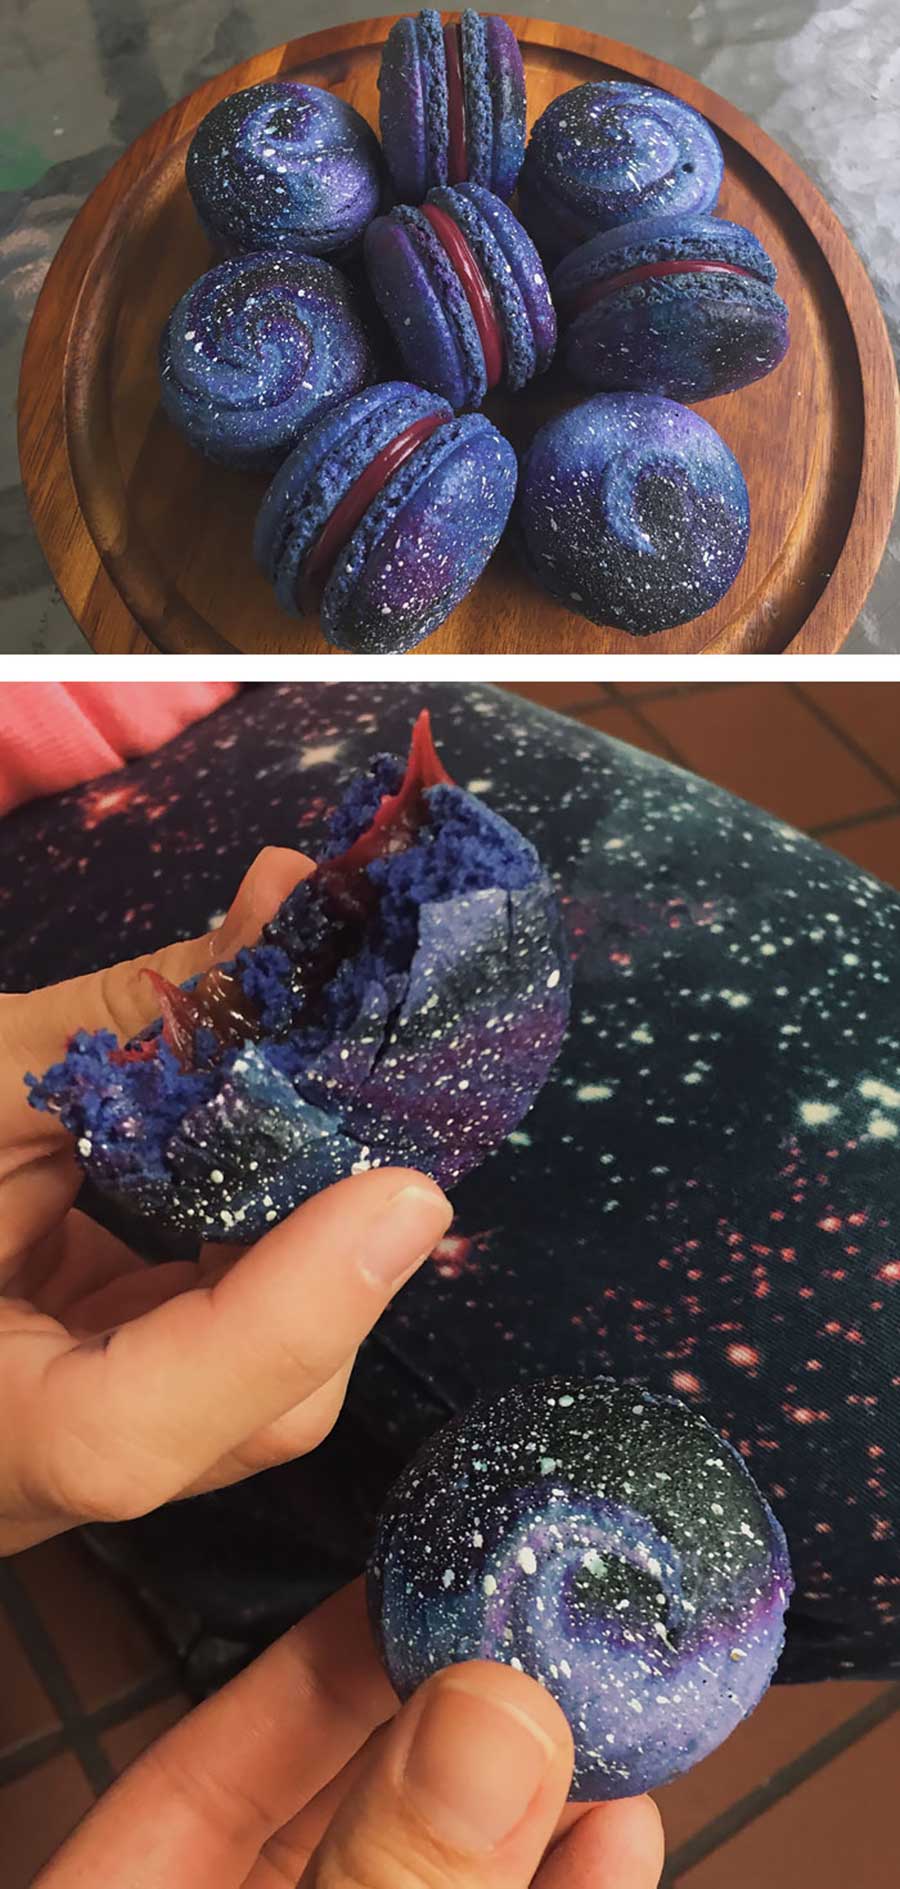 تصاویر شیرینی ها با تزئین فضایی